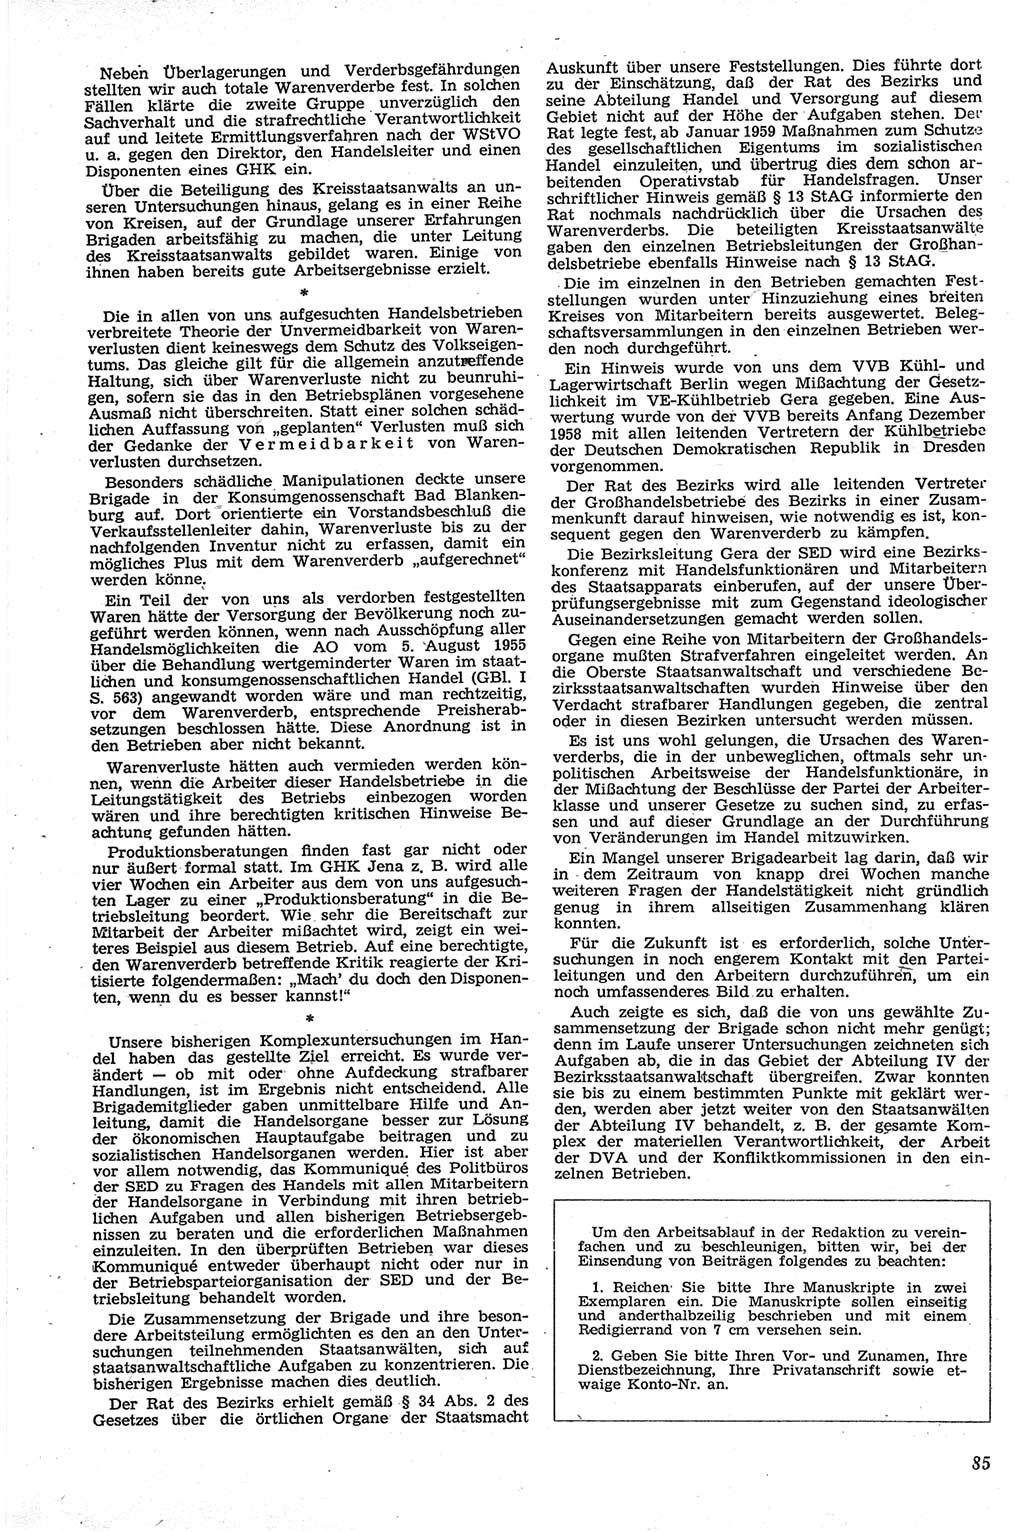 Neue Justiz (NJ), Zeitschrift für Recht und Rechtswissenschaft [Deutsche Demokratische Republik (DDR)], 13. Jahrgang 1959, Seite 85 (NJ DDR 1959, S. 85)